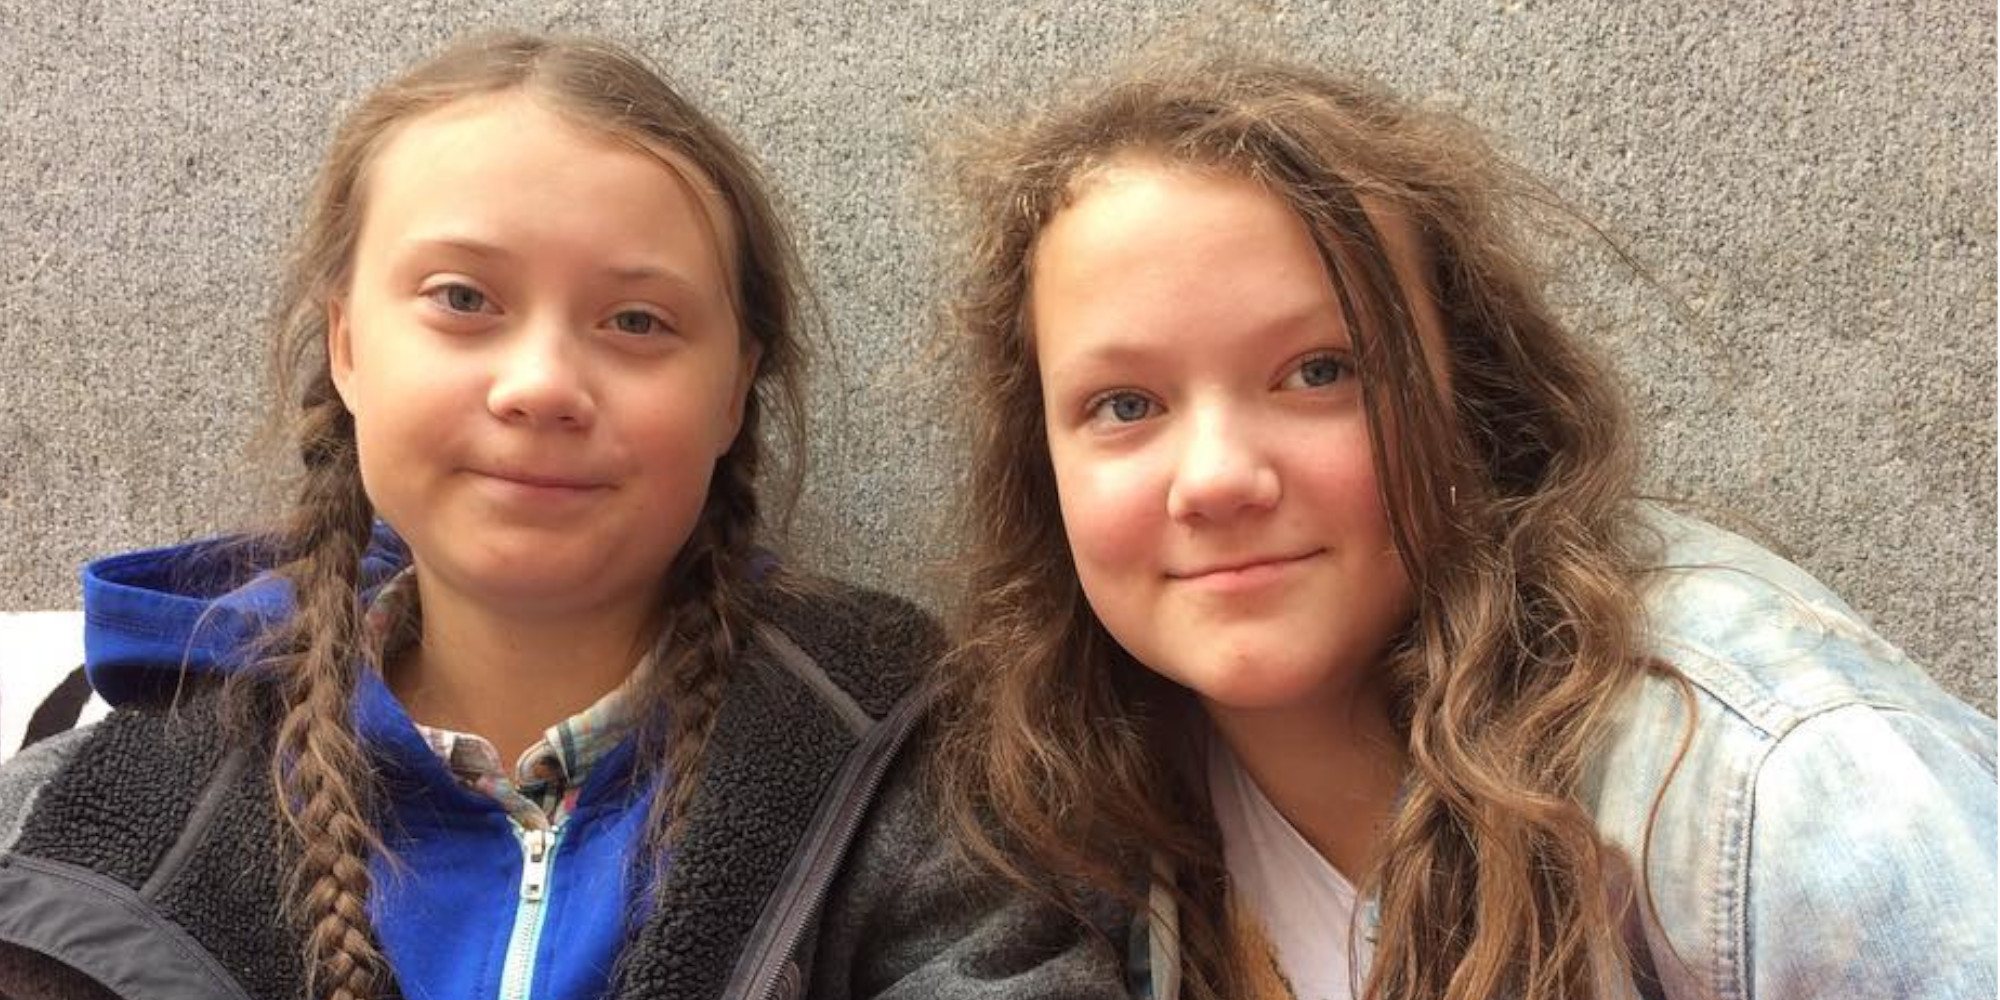 Así son y así se llevan Greta y Beata Thunberg: dos hermanas y jóvenes activistas concienciadas con el planeta